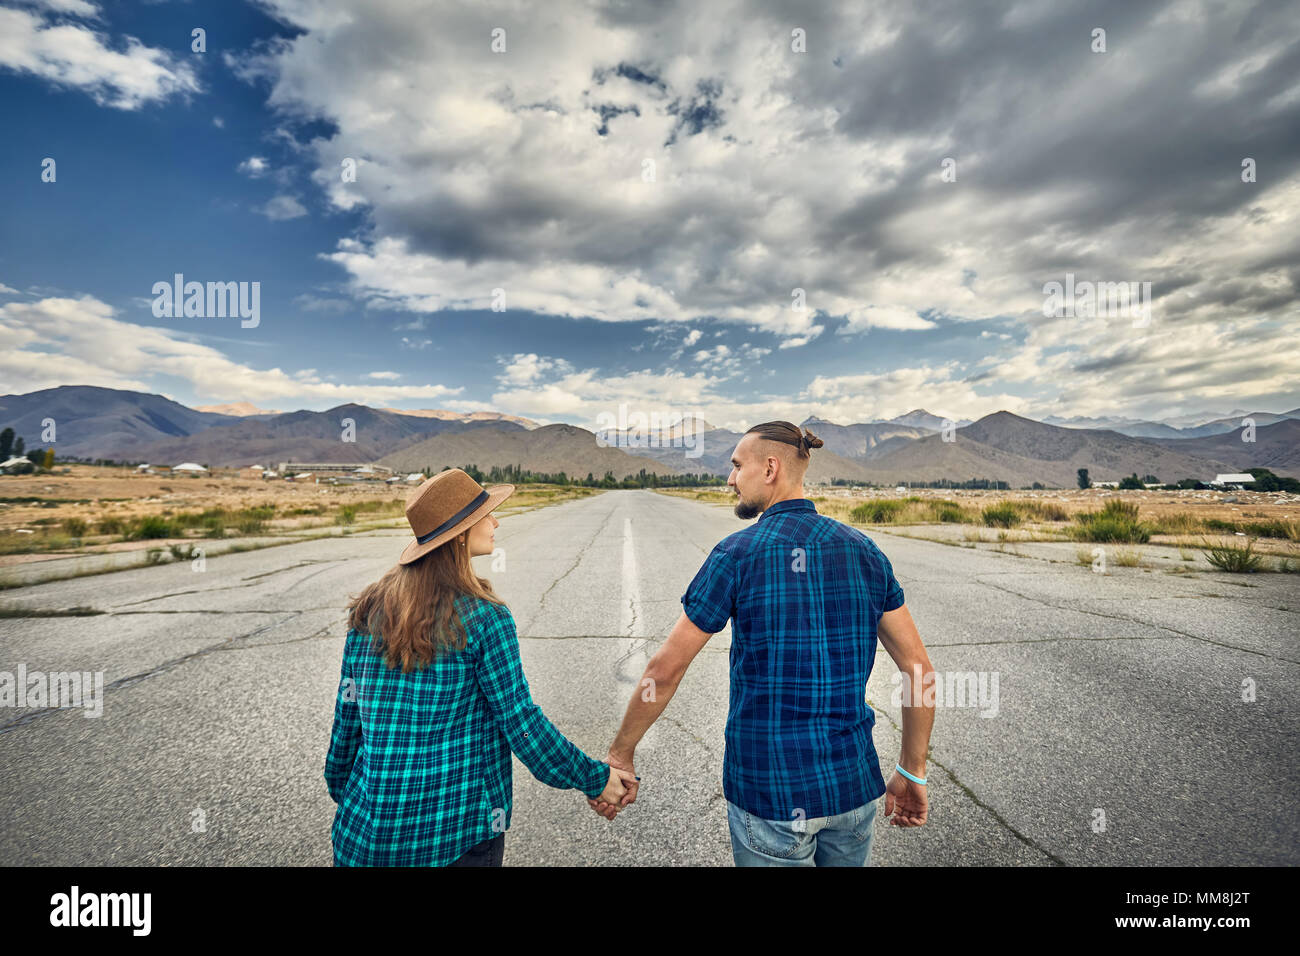 Glückliches Paar in kariertes Hemd Holding durch die Hände und laufen auf dem breiten Asphaltstraße mit Bergen und bewölkter Himmel Hintergrund Stockfoto